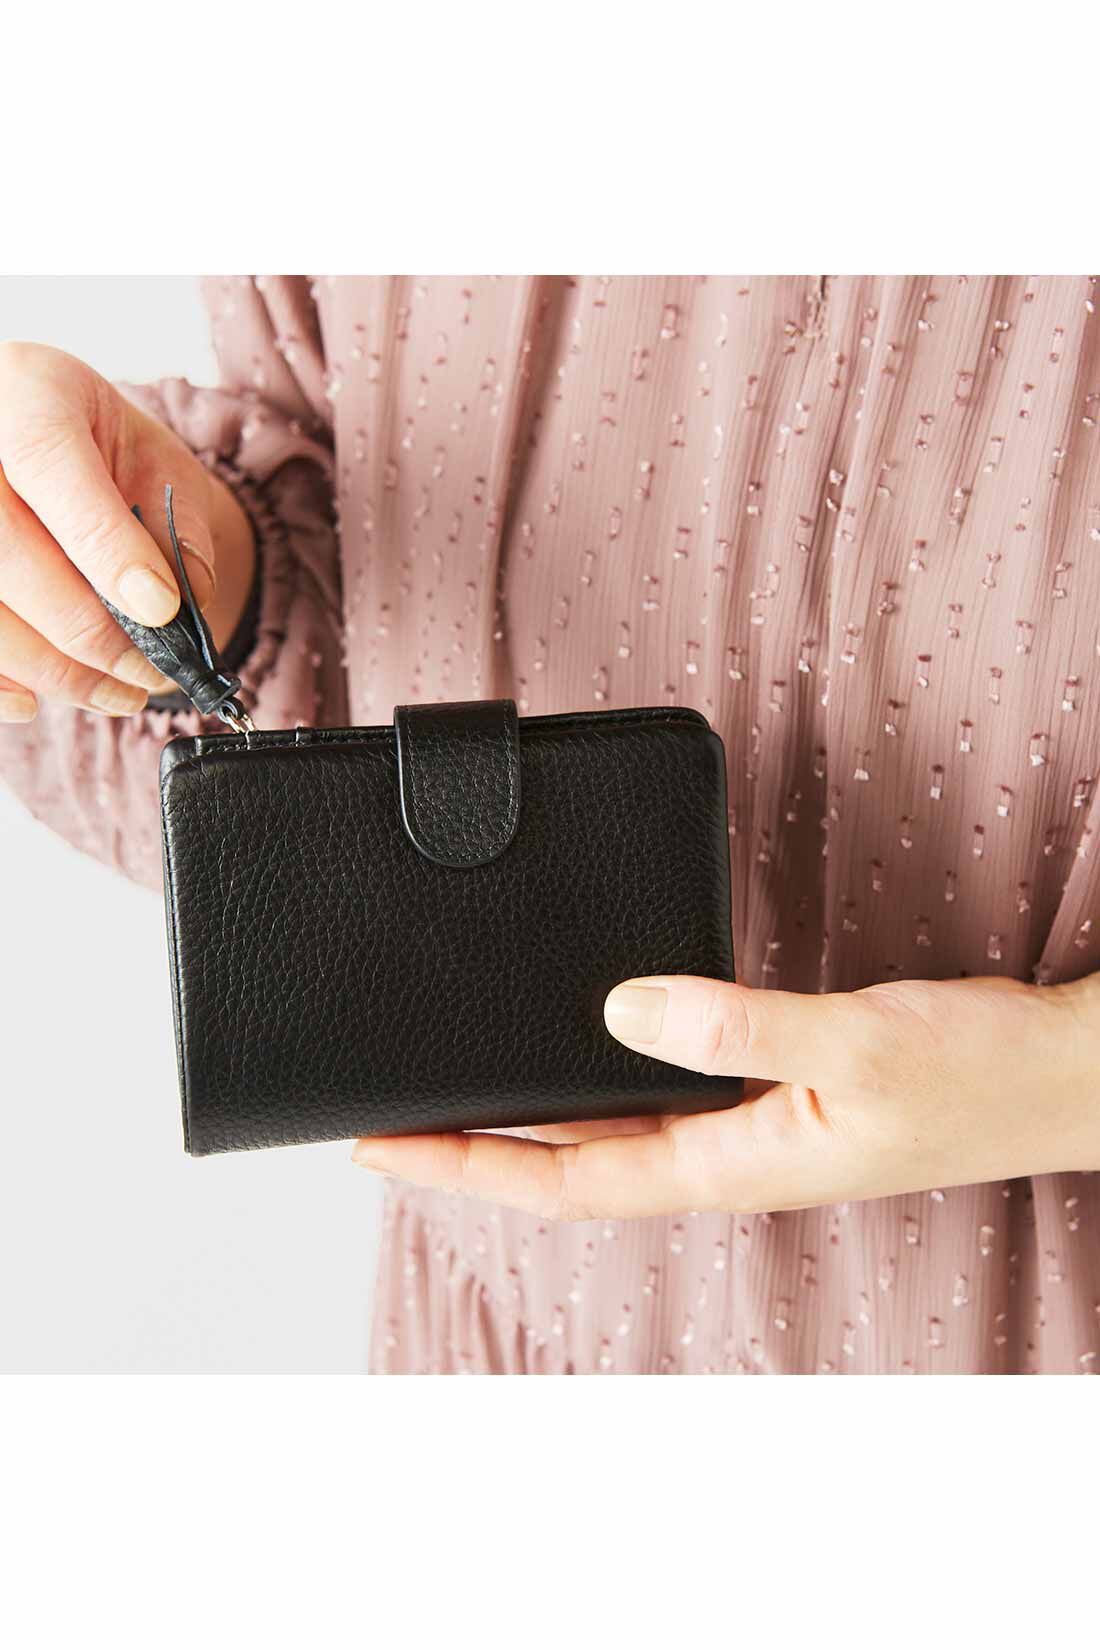 イディット|IEDIT[イディット]　くったり本革素材できれいめ二つ折り財布〈オレンジ〉|手のひらに収まるコンパクトなサイズ感。